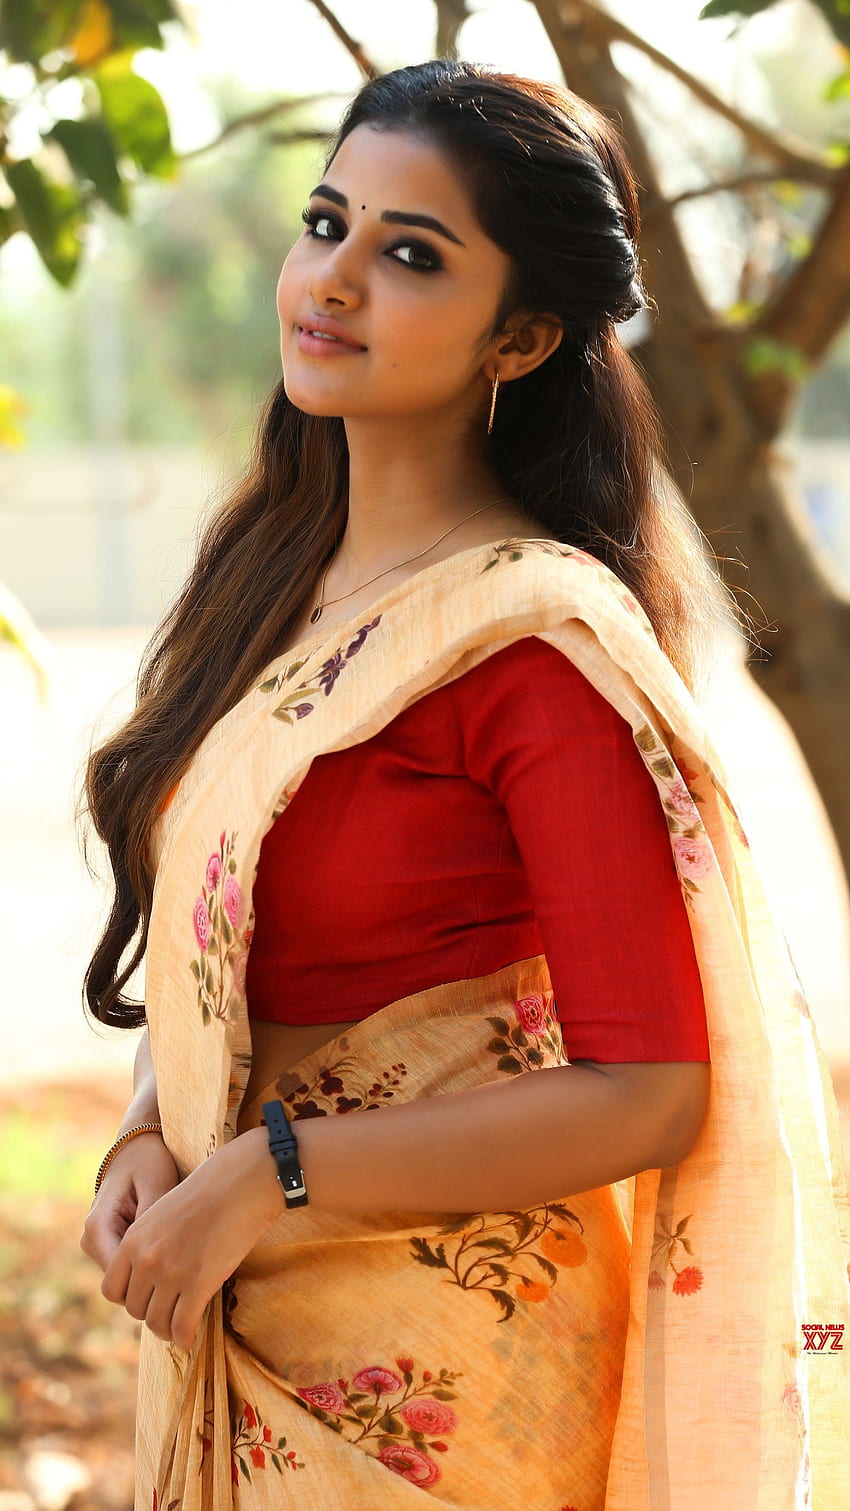 Anupama parmeshwaran , actrice telugu, amoureuse des saris Fond d'écran de téléphone HD